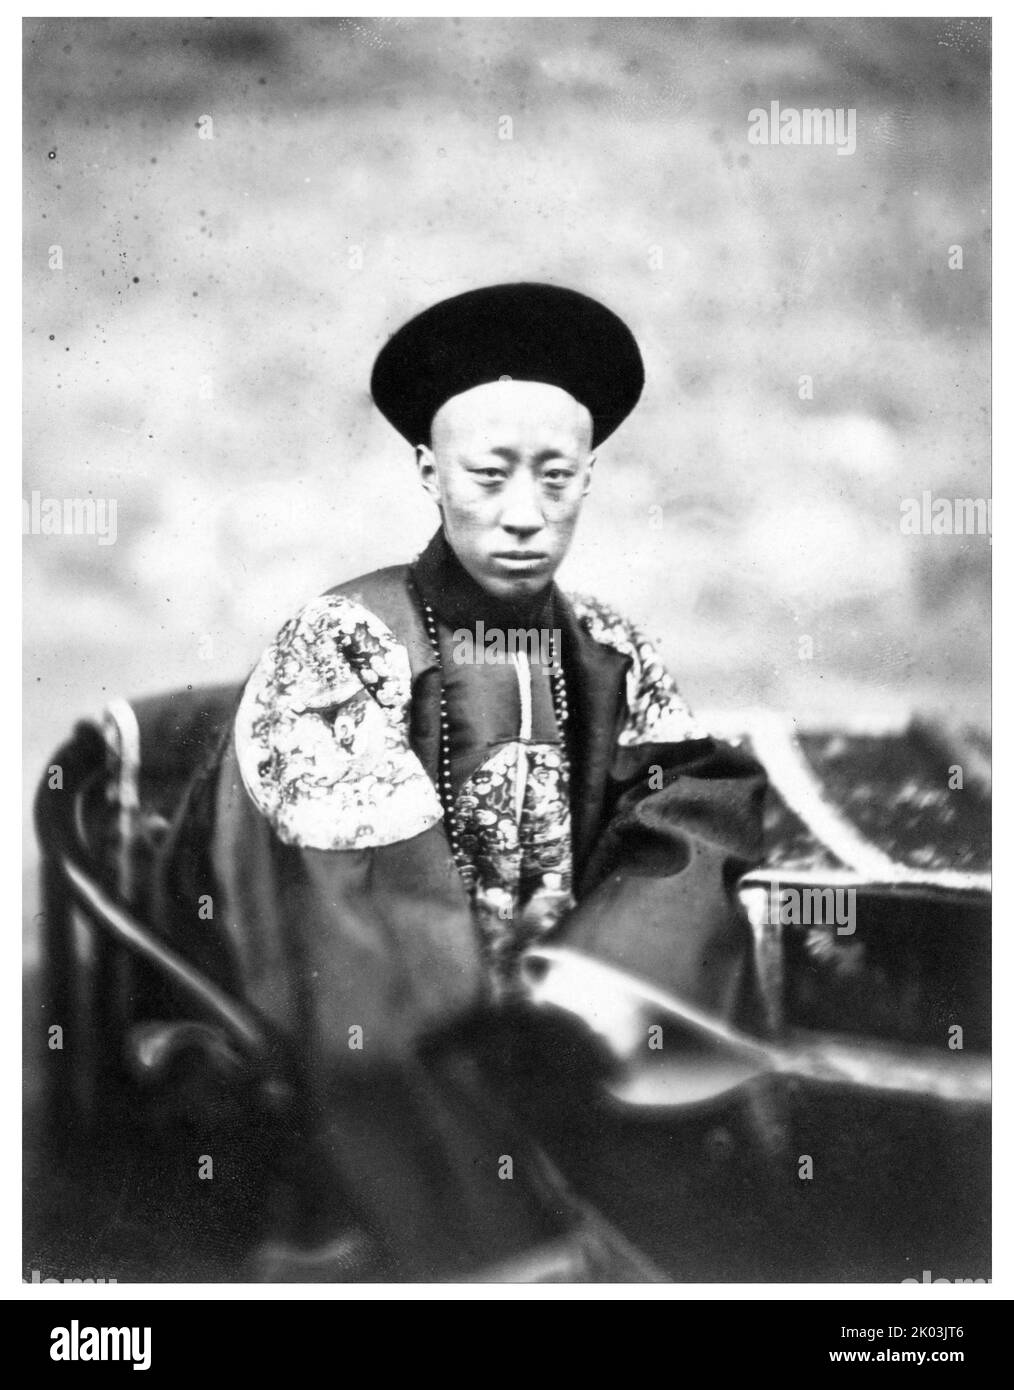 Yixin (11. Januar 1833 - 29. Mai 1898), besser bekannt auf Englisch als Prinz Kung oder Gong, war ein kaiserlicher Prinz des Aisin Gioro Clans und ein wichtiger Staatsmann der mandschu-geführten Qing Dynastie in China. Er war von 1861 bis 1865 Regent des Reiches und hatte auch zu anderen Zeiten großen Einfluss. Stockfoto